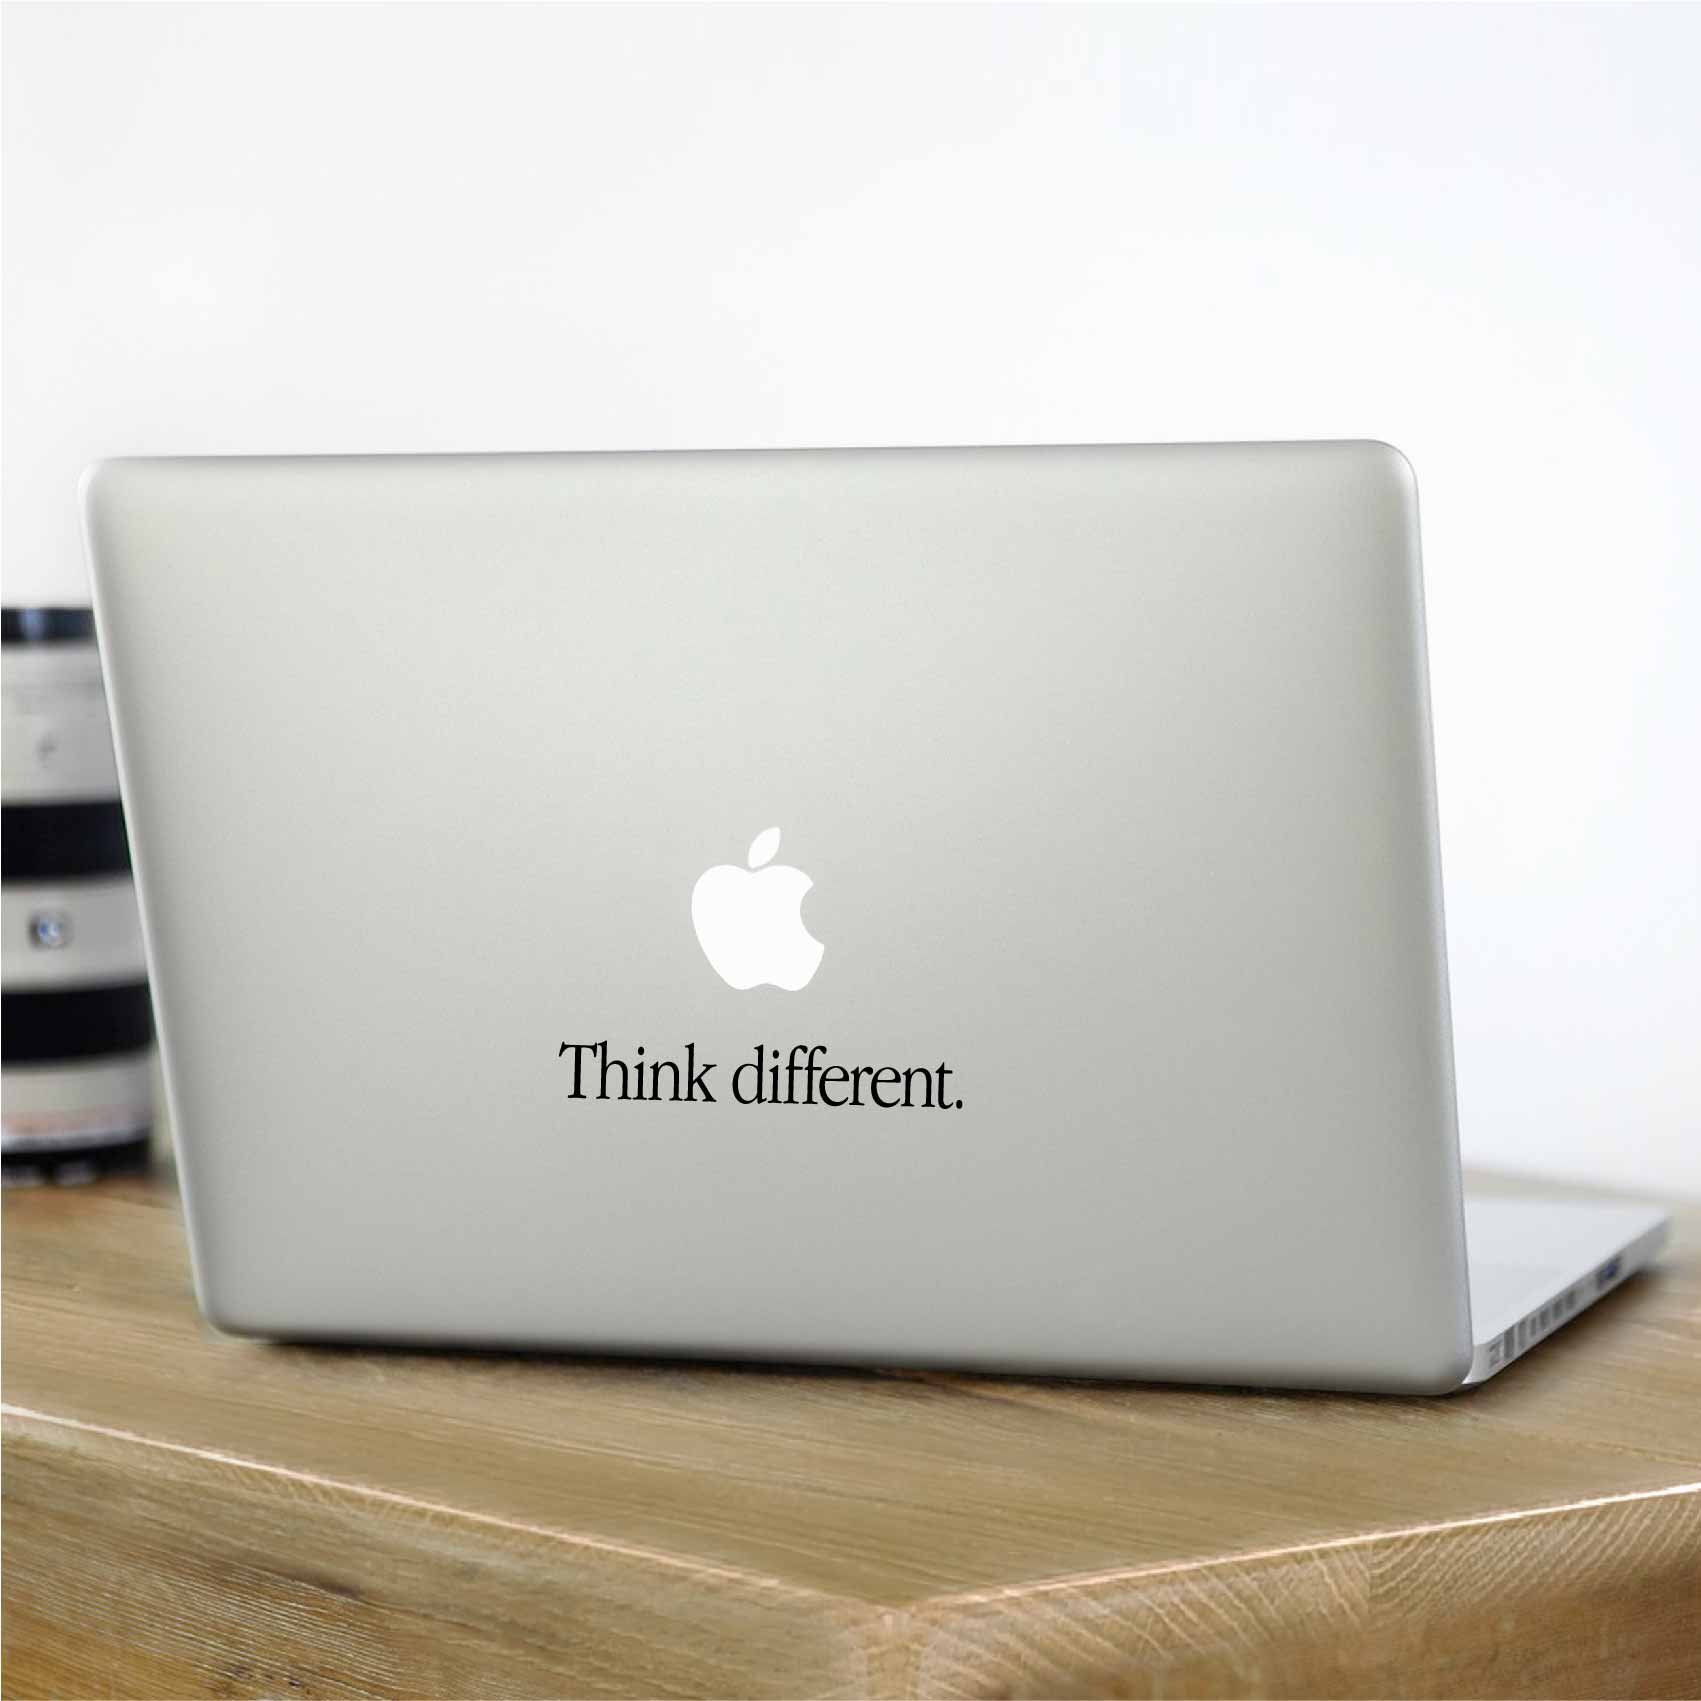 stickers-pour-mac-think different-ref29mac-autocollant-macbook-pro-sticker-ordinateur-portable-macbook-air